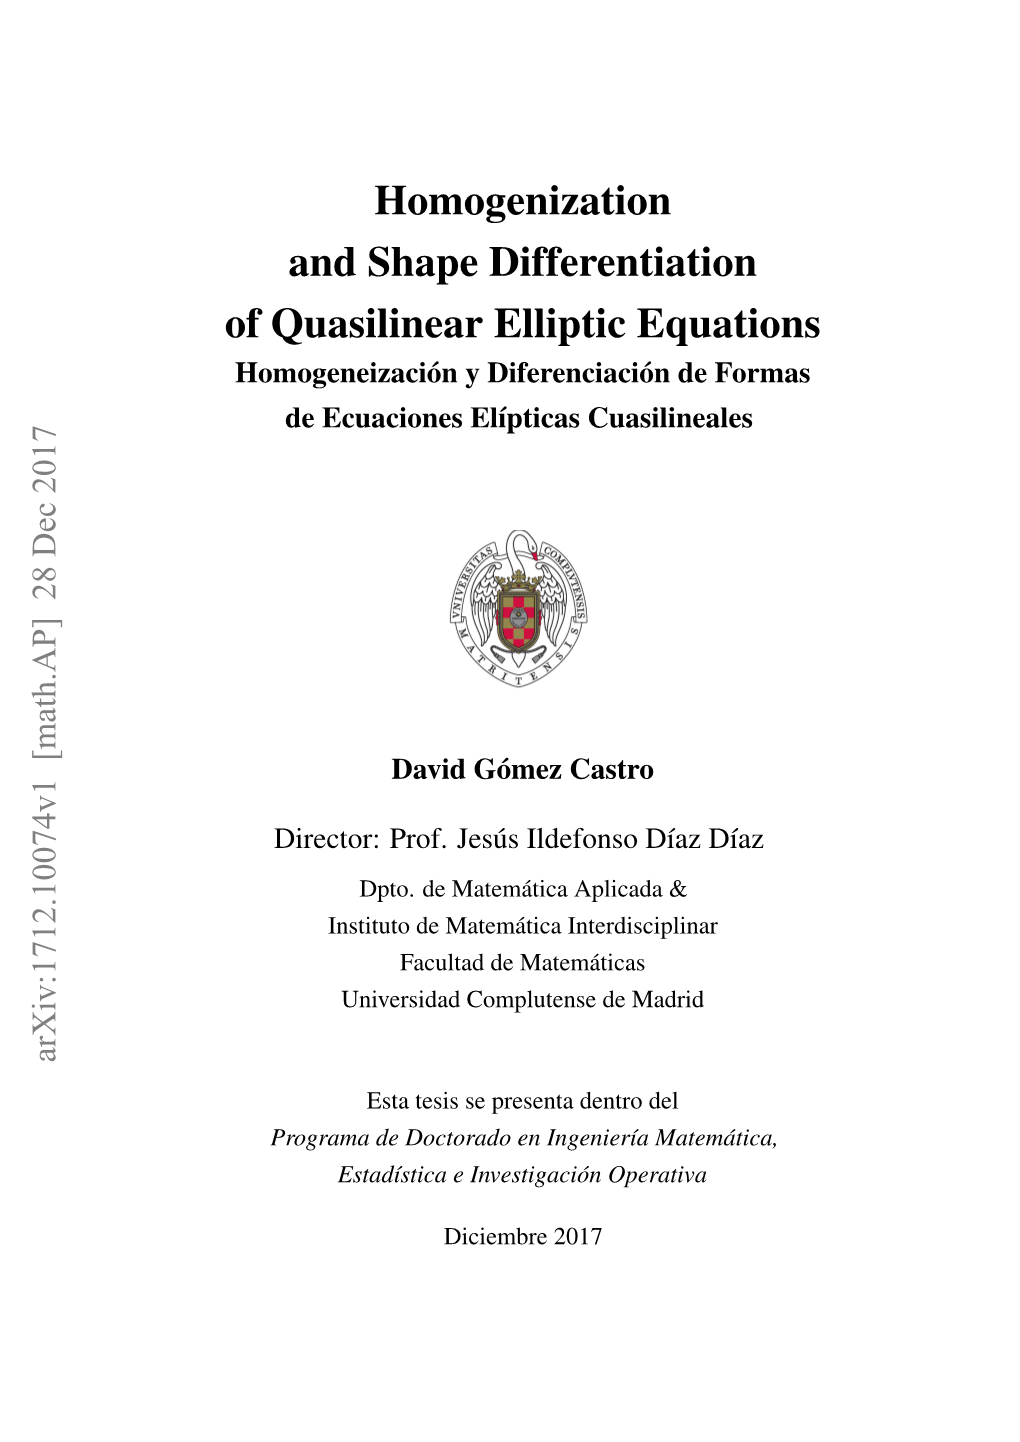 Homogenization and Shape Differentiation of Quasilinear Elliptic Equations Homogeneización Y Diferenciación De Formas De Ecuaciones Elípticas Cuasilineales